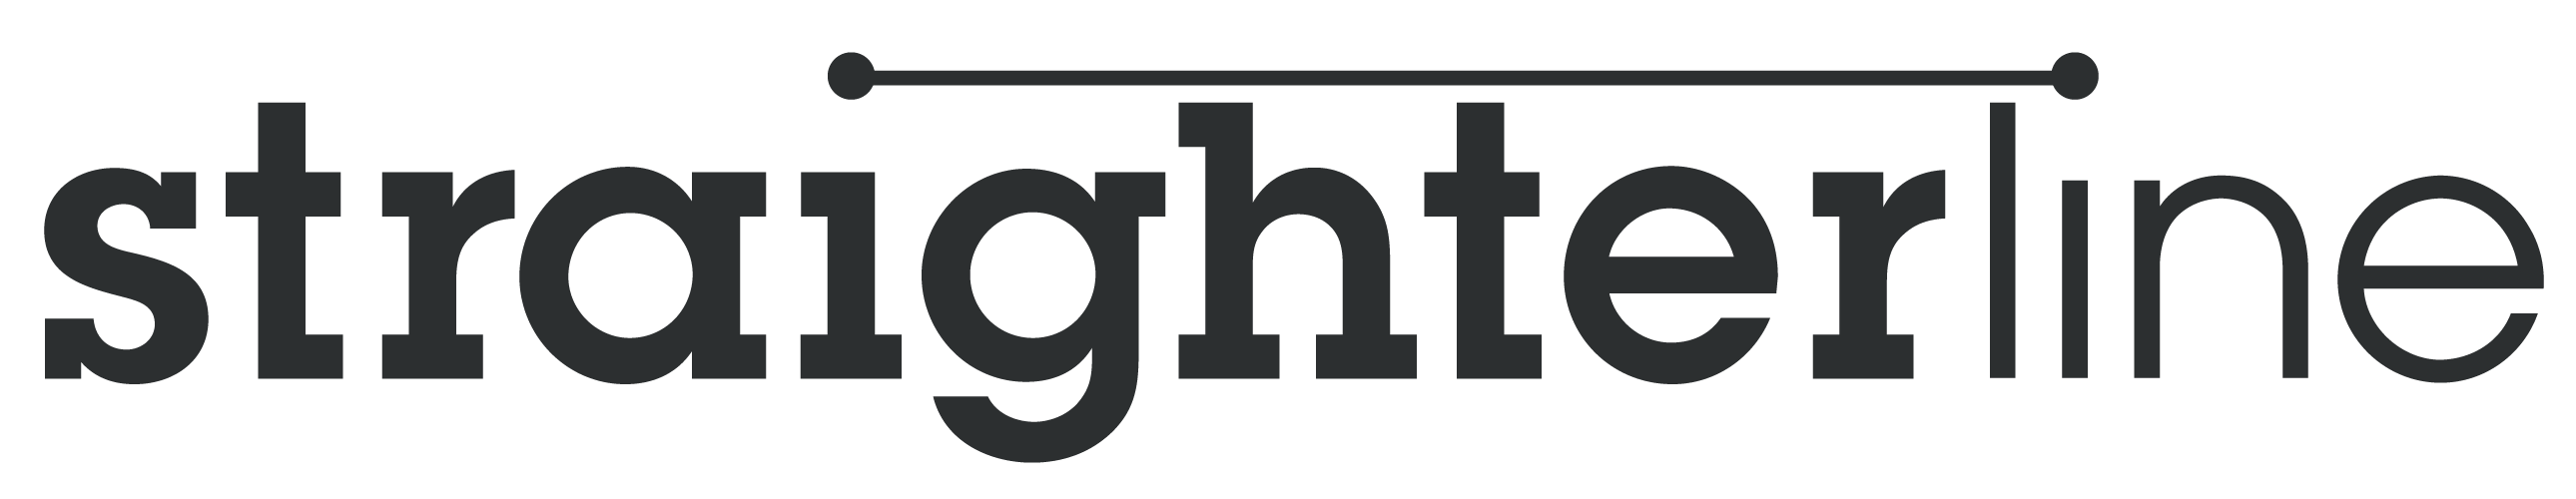 Straighterline logo.